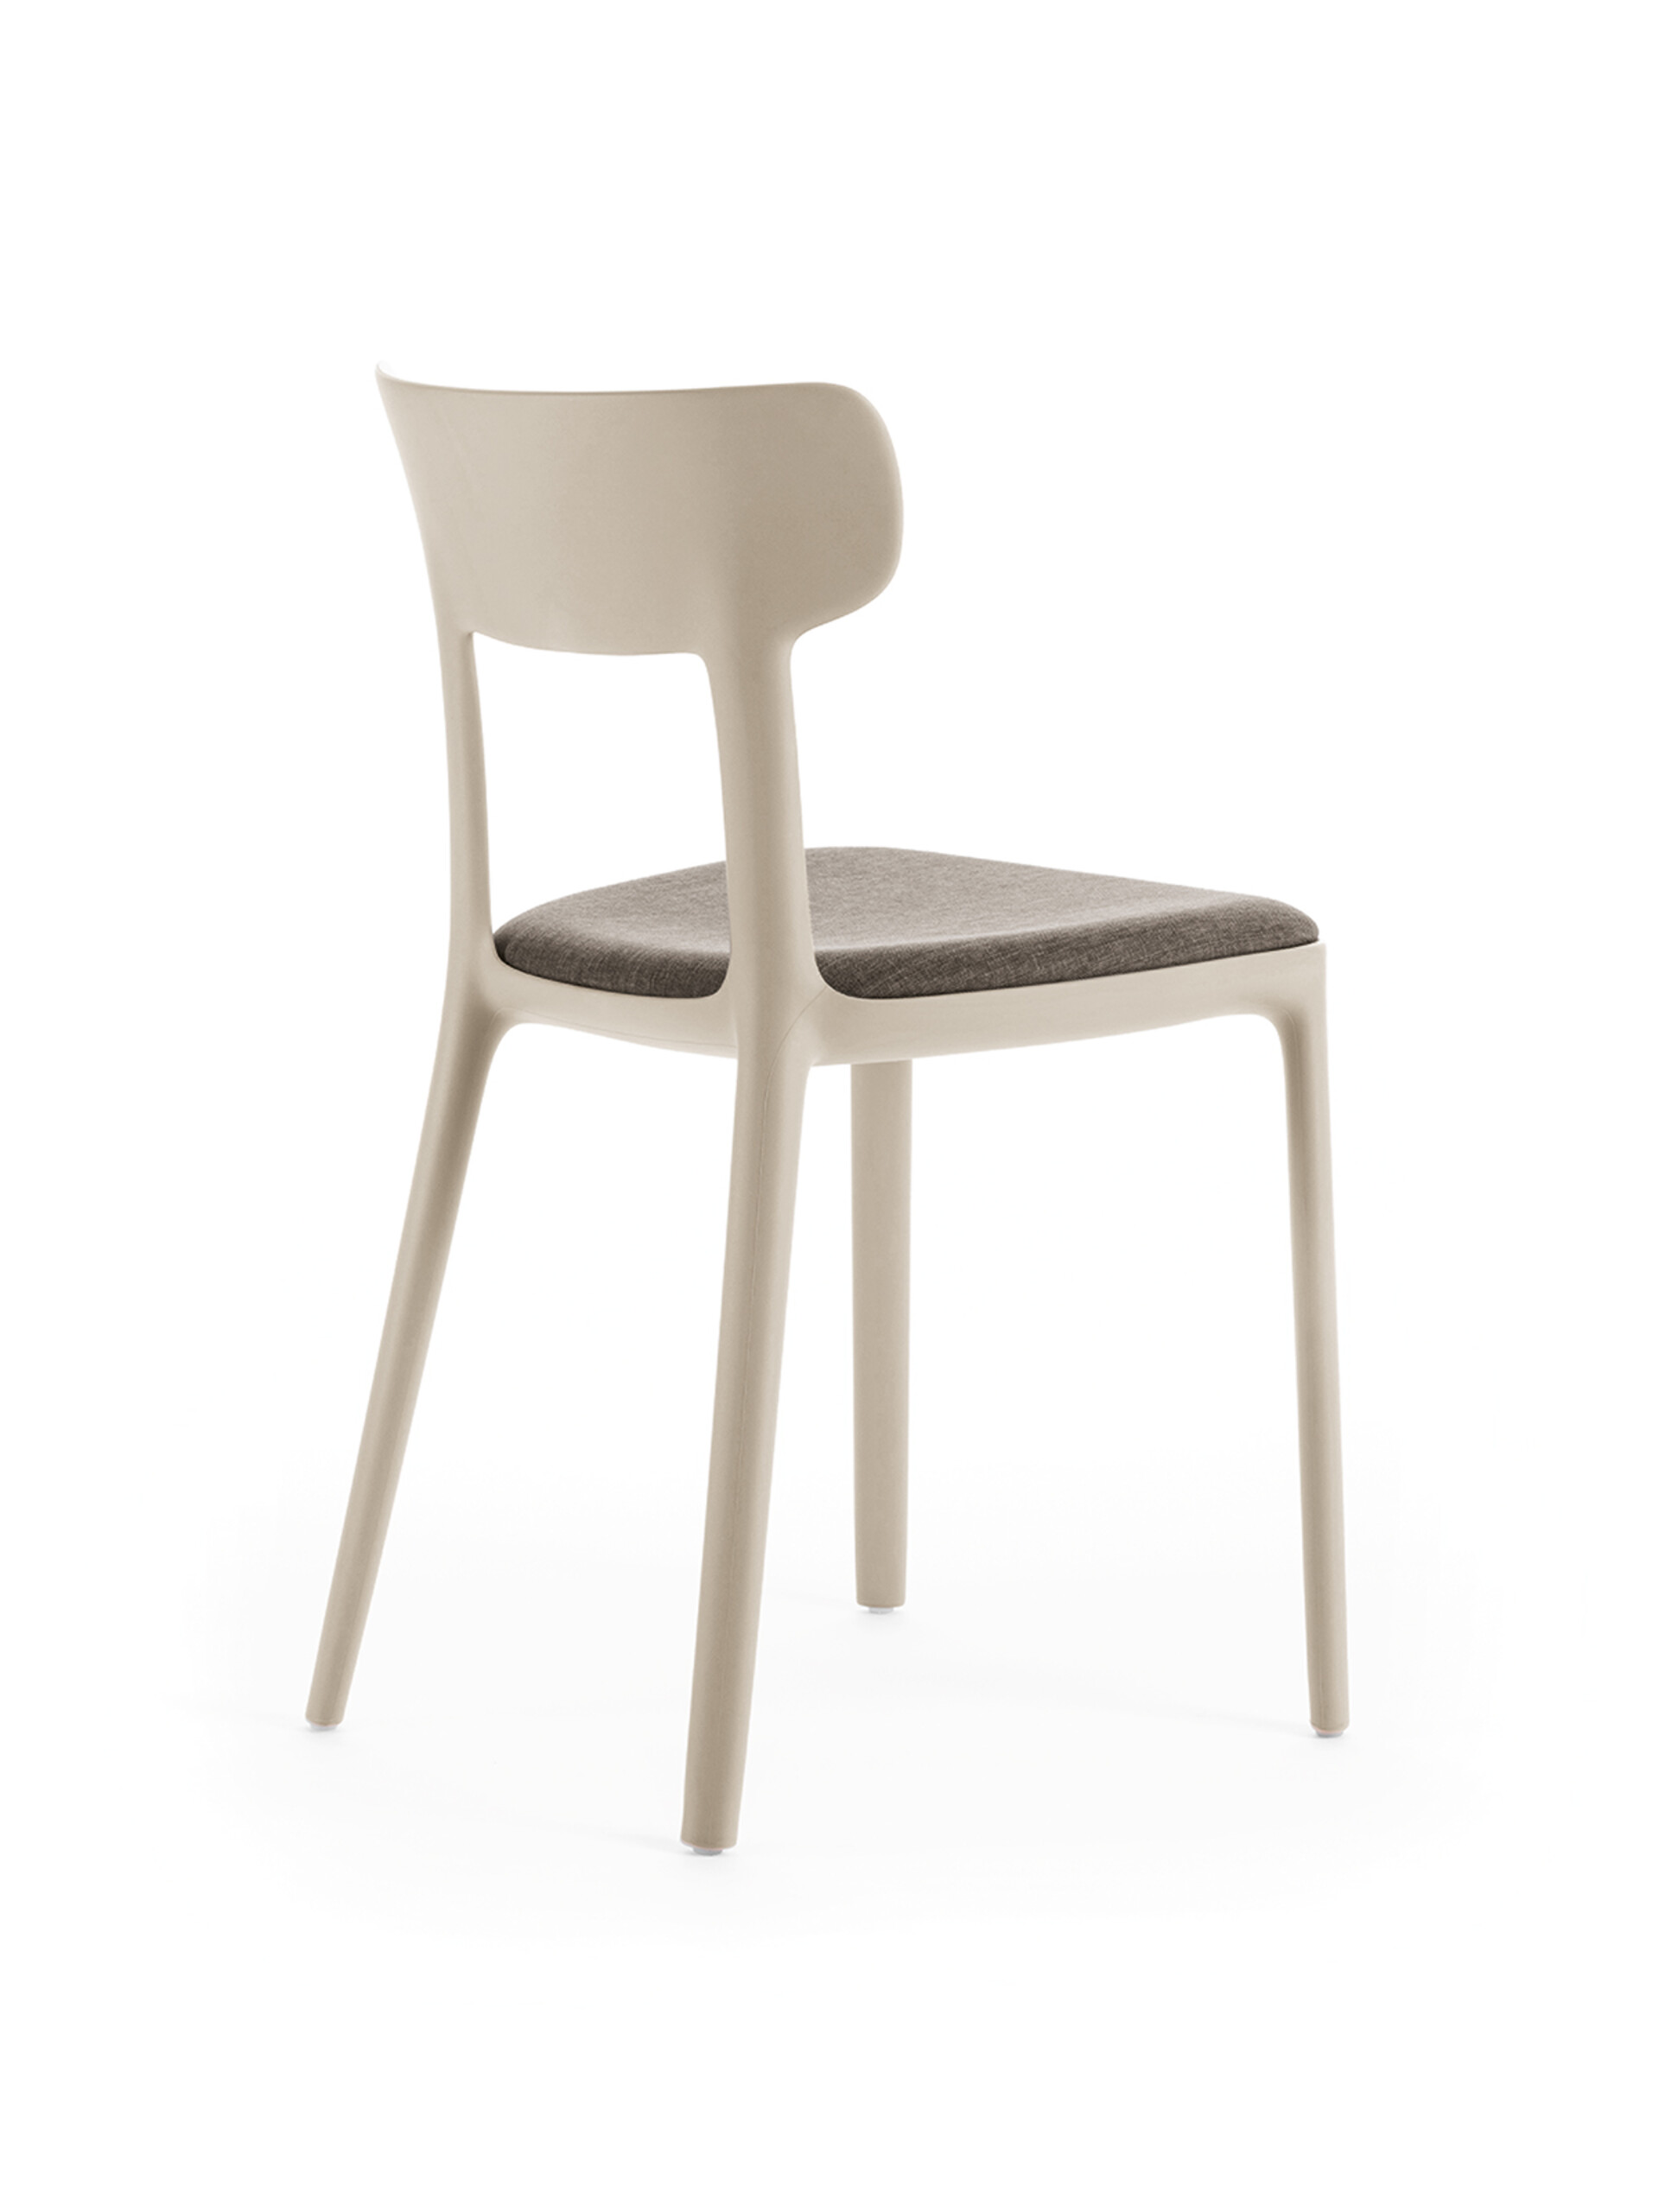 Sedia con Braccioli - Calla, Arredo Design Online